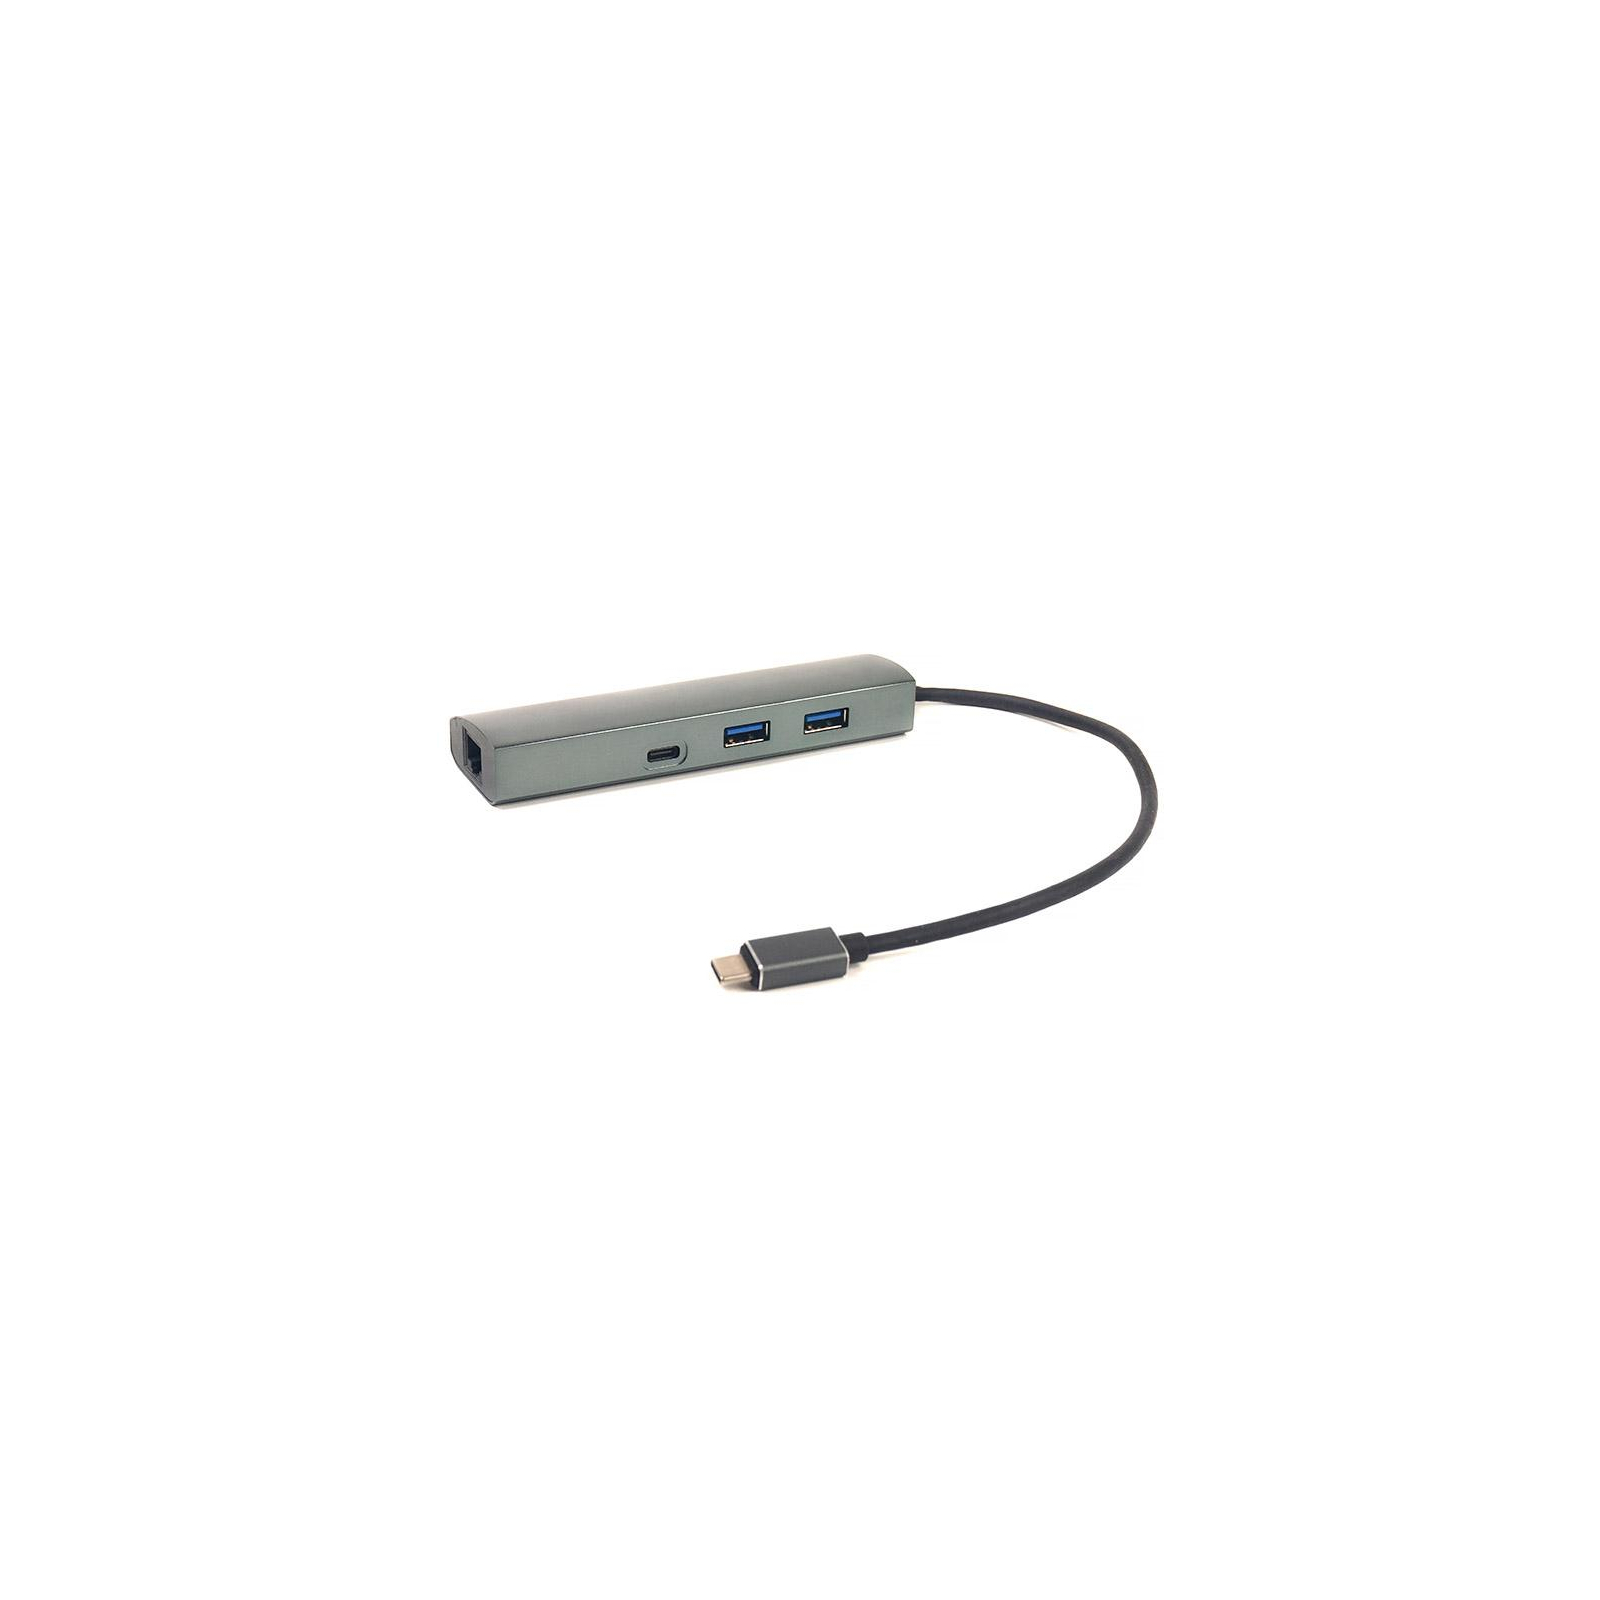 Порт-реплікатор PowerPlant Type-C USB 3.1 -> 2*USB3.0, Type-C USB3.1, Gigabit Ethernet (CA910557)